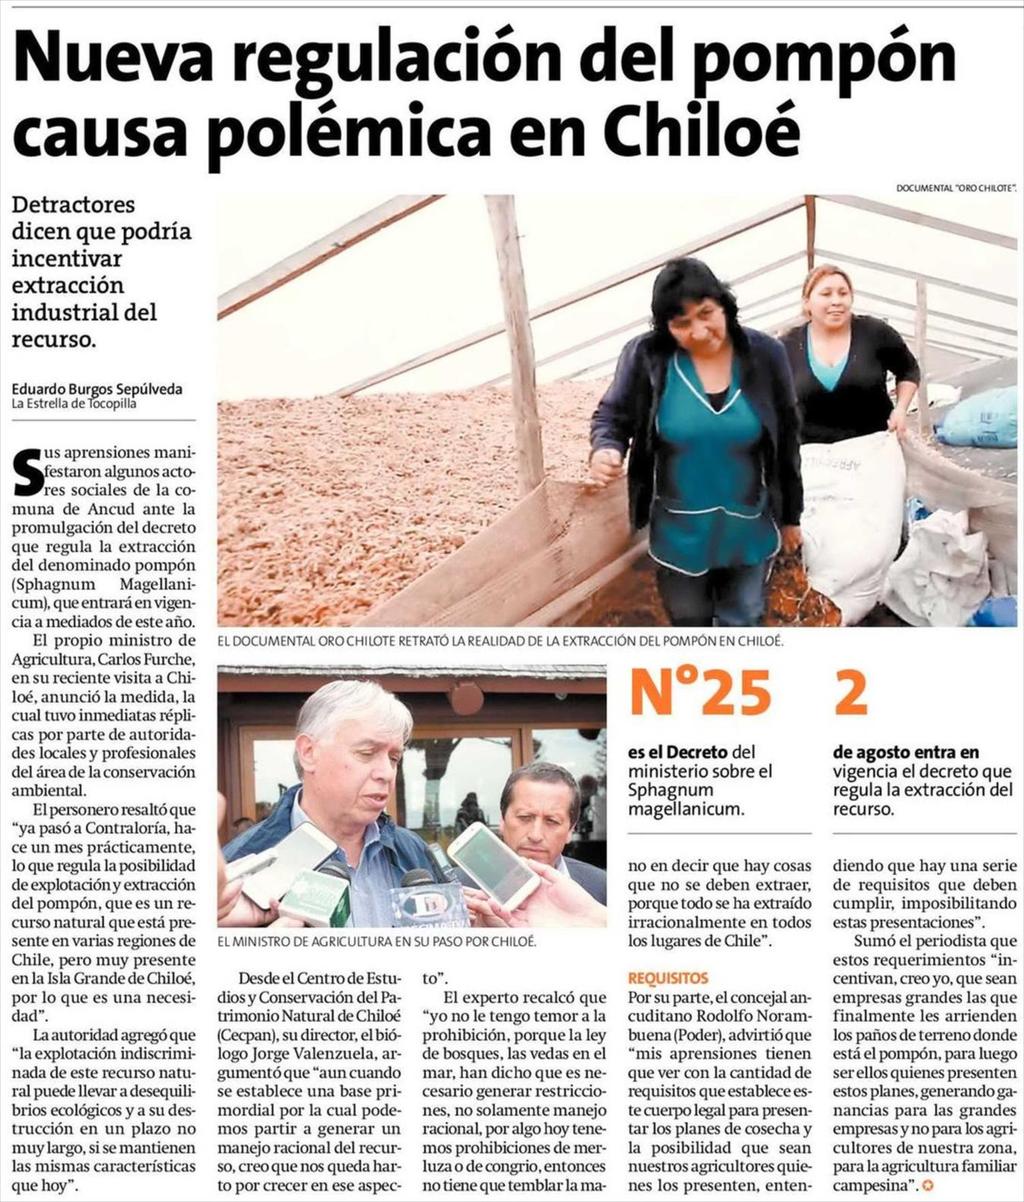 Fecha: 06-03-2018 Fuente: La Estrella de - Chiloe - Chile 5 2 Nueva